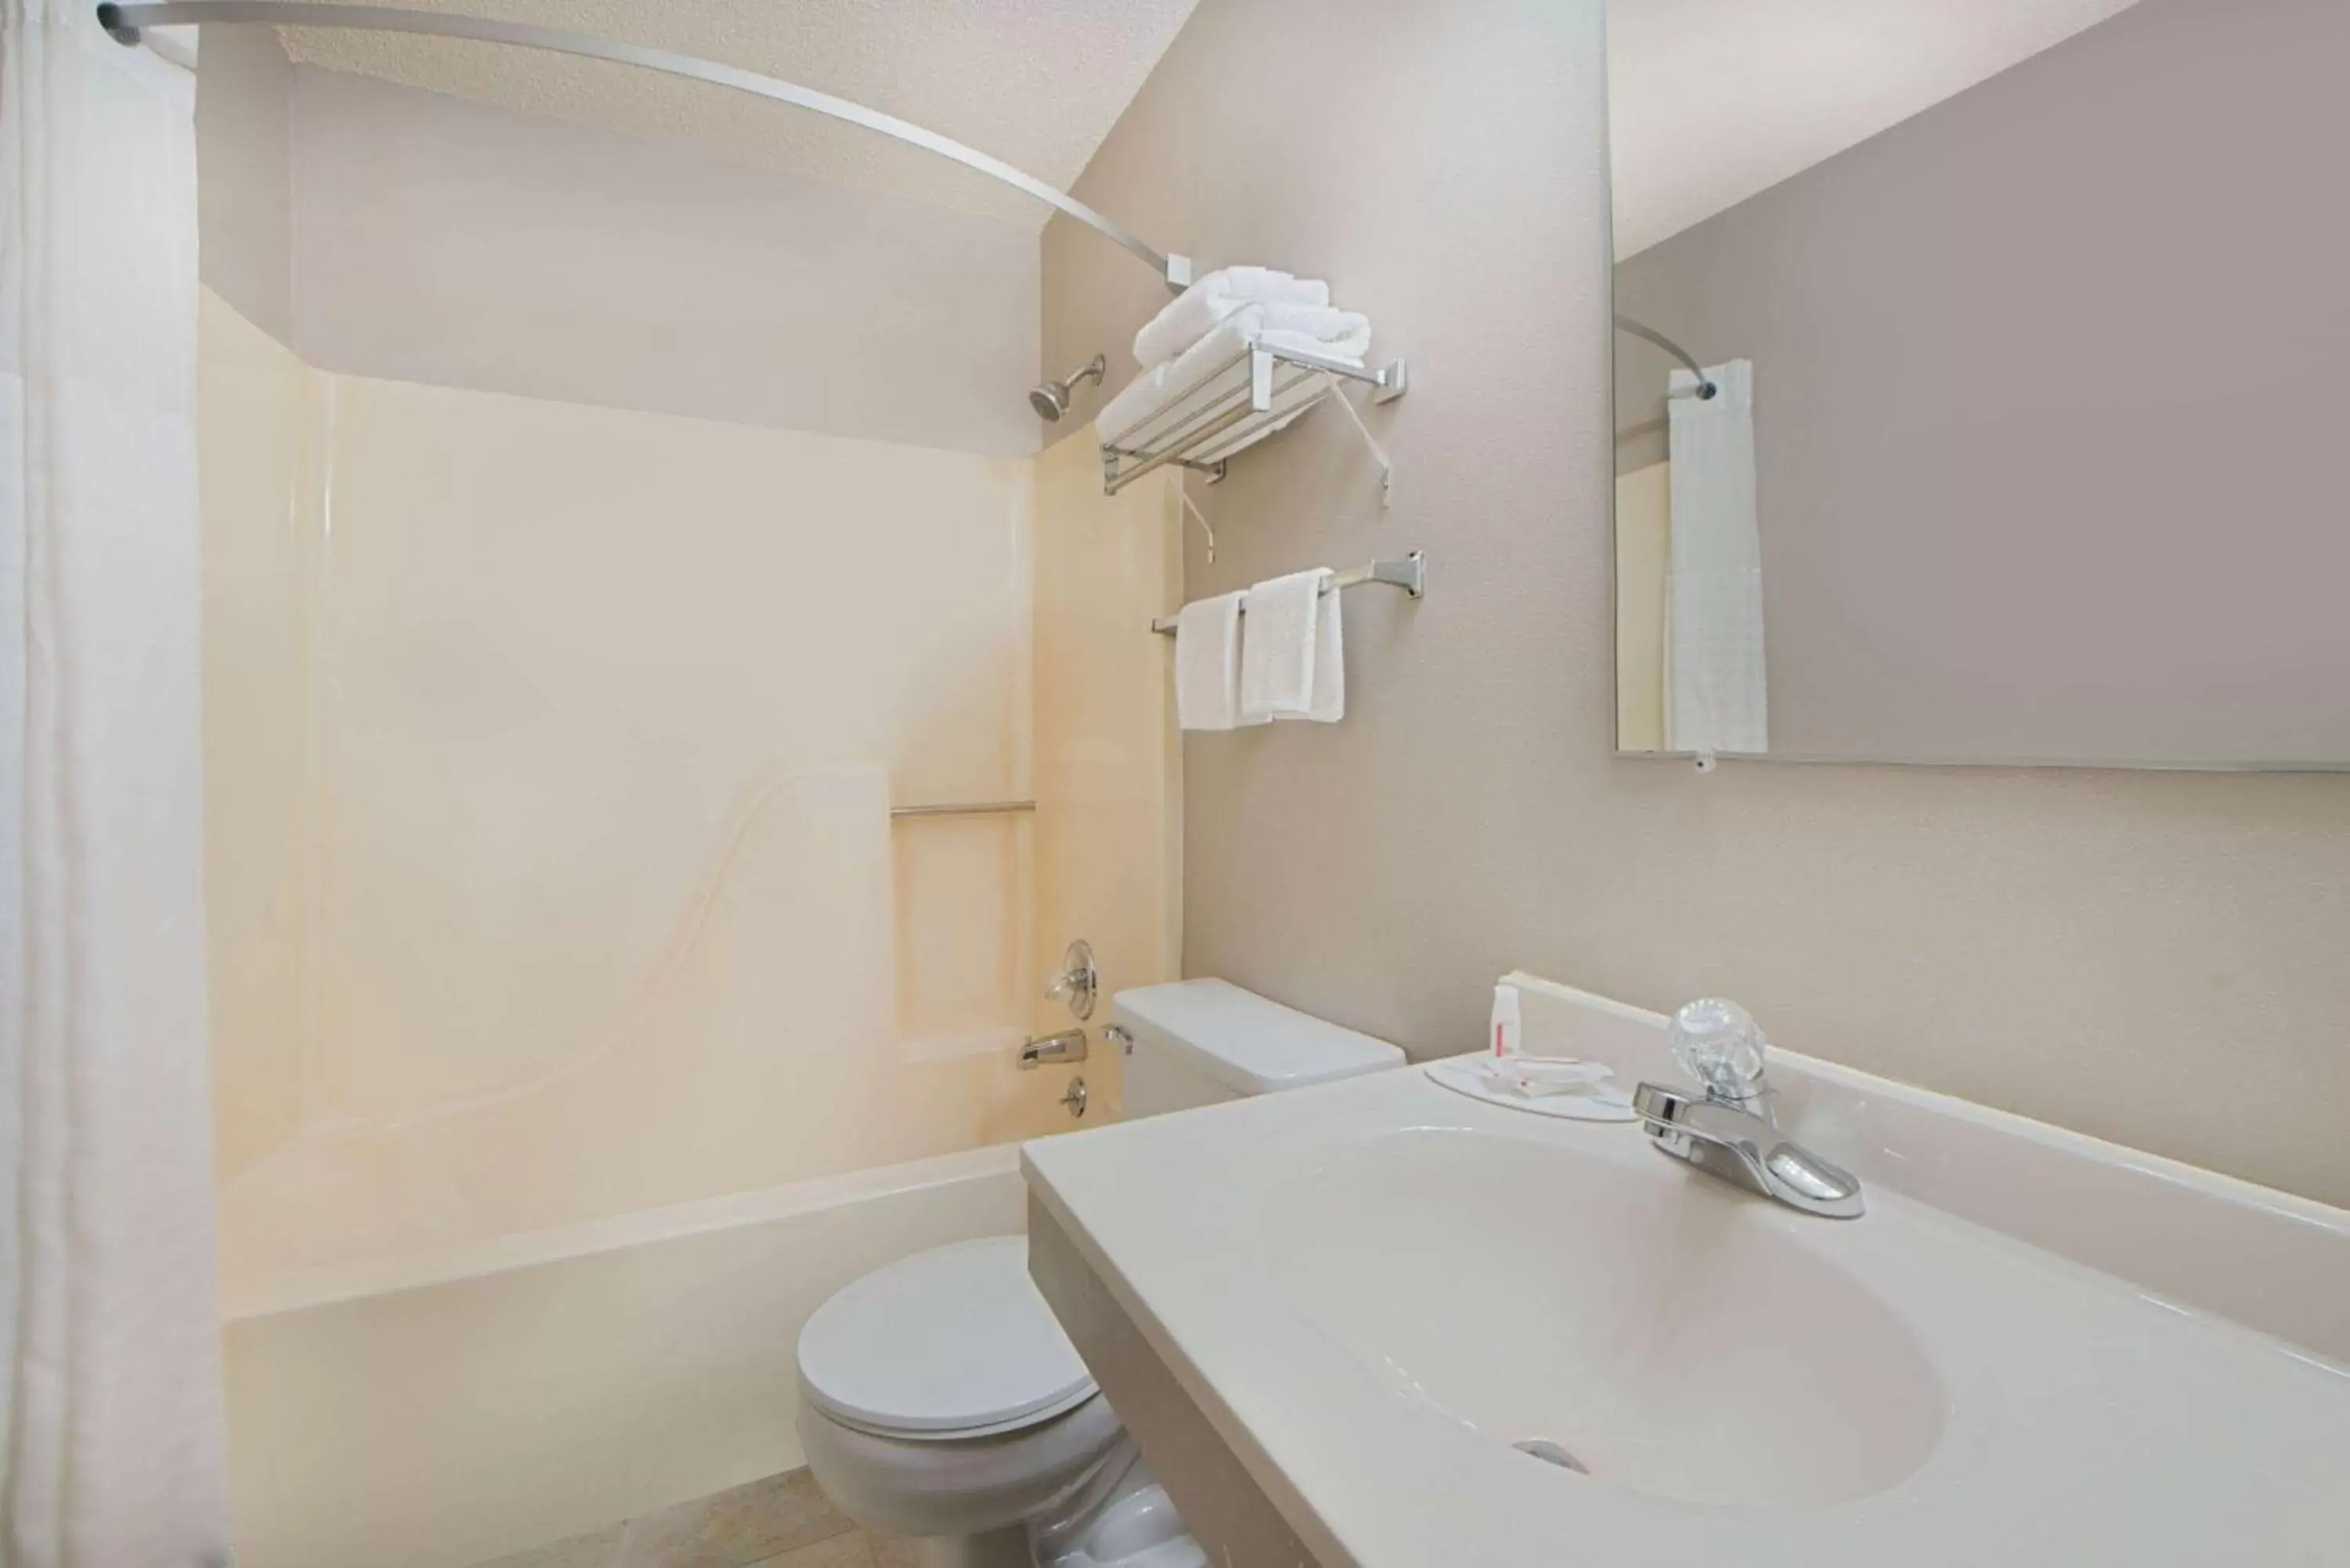 TV and multimedia, Bathroom in Super 8 by Wyndham Pella